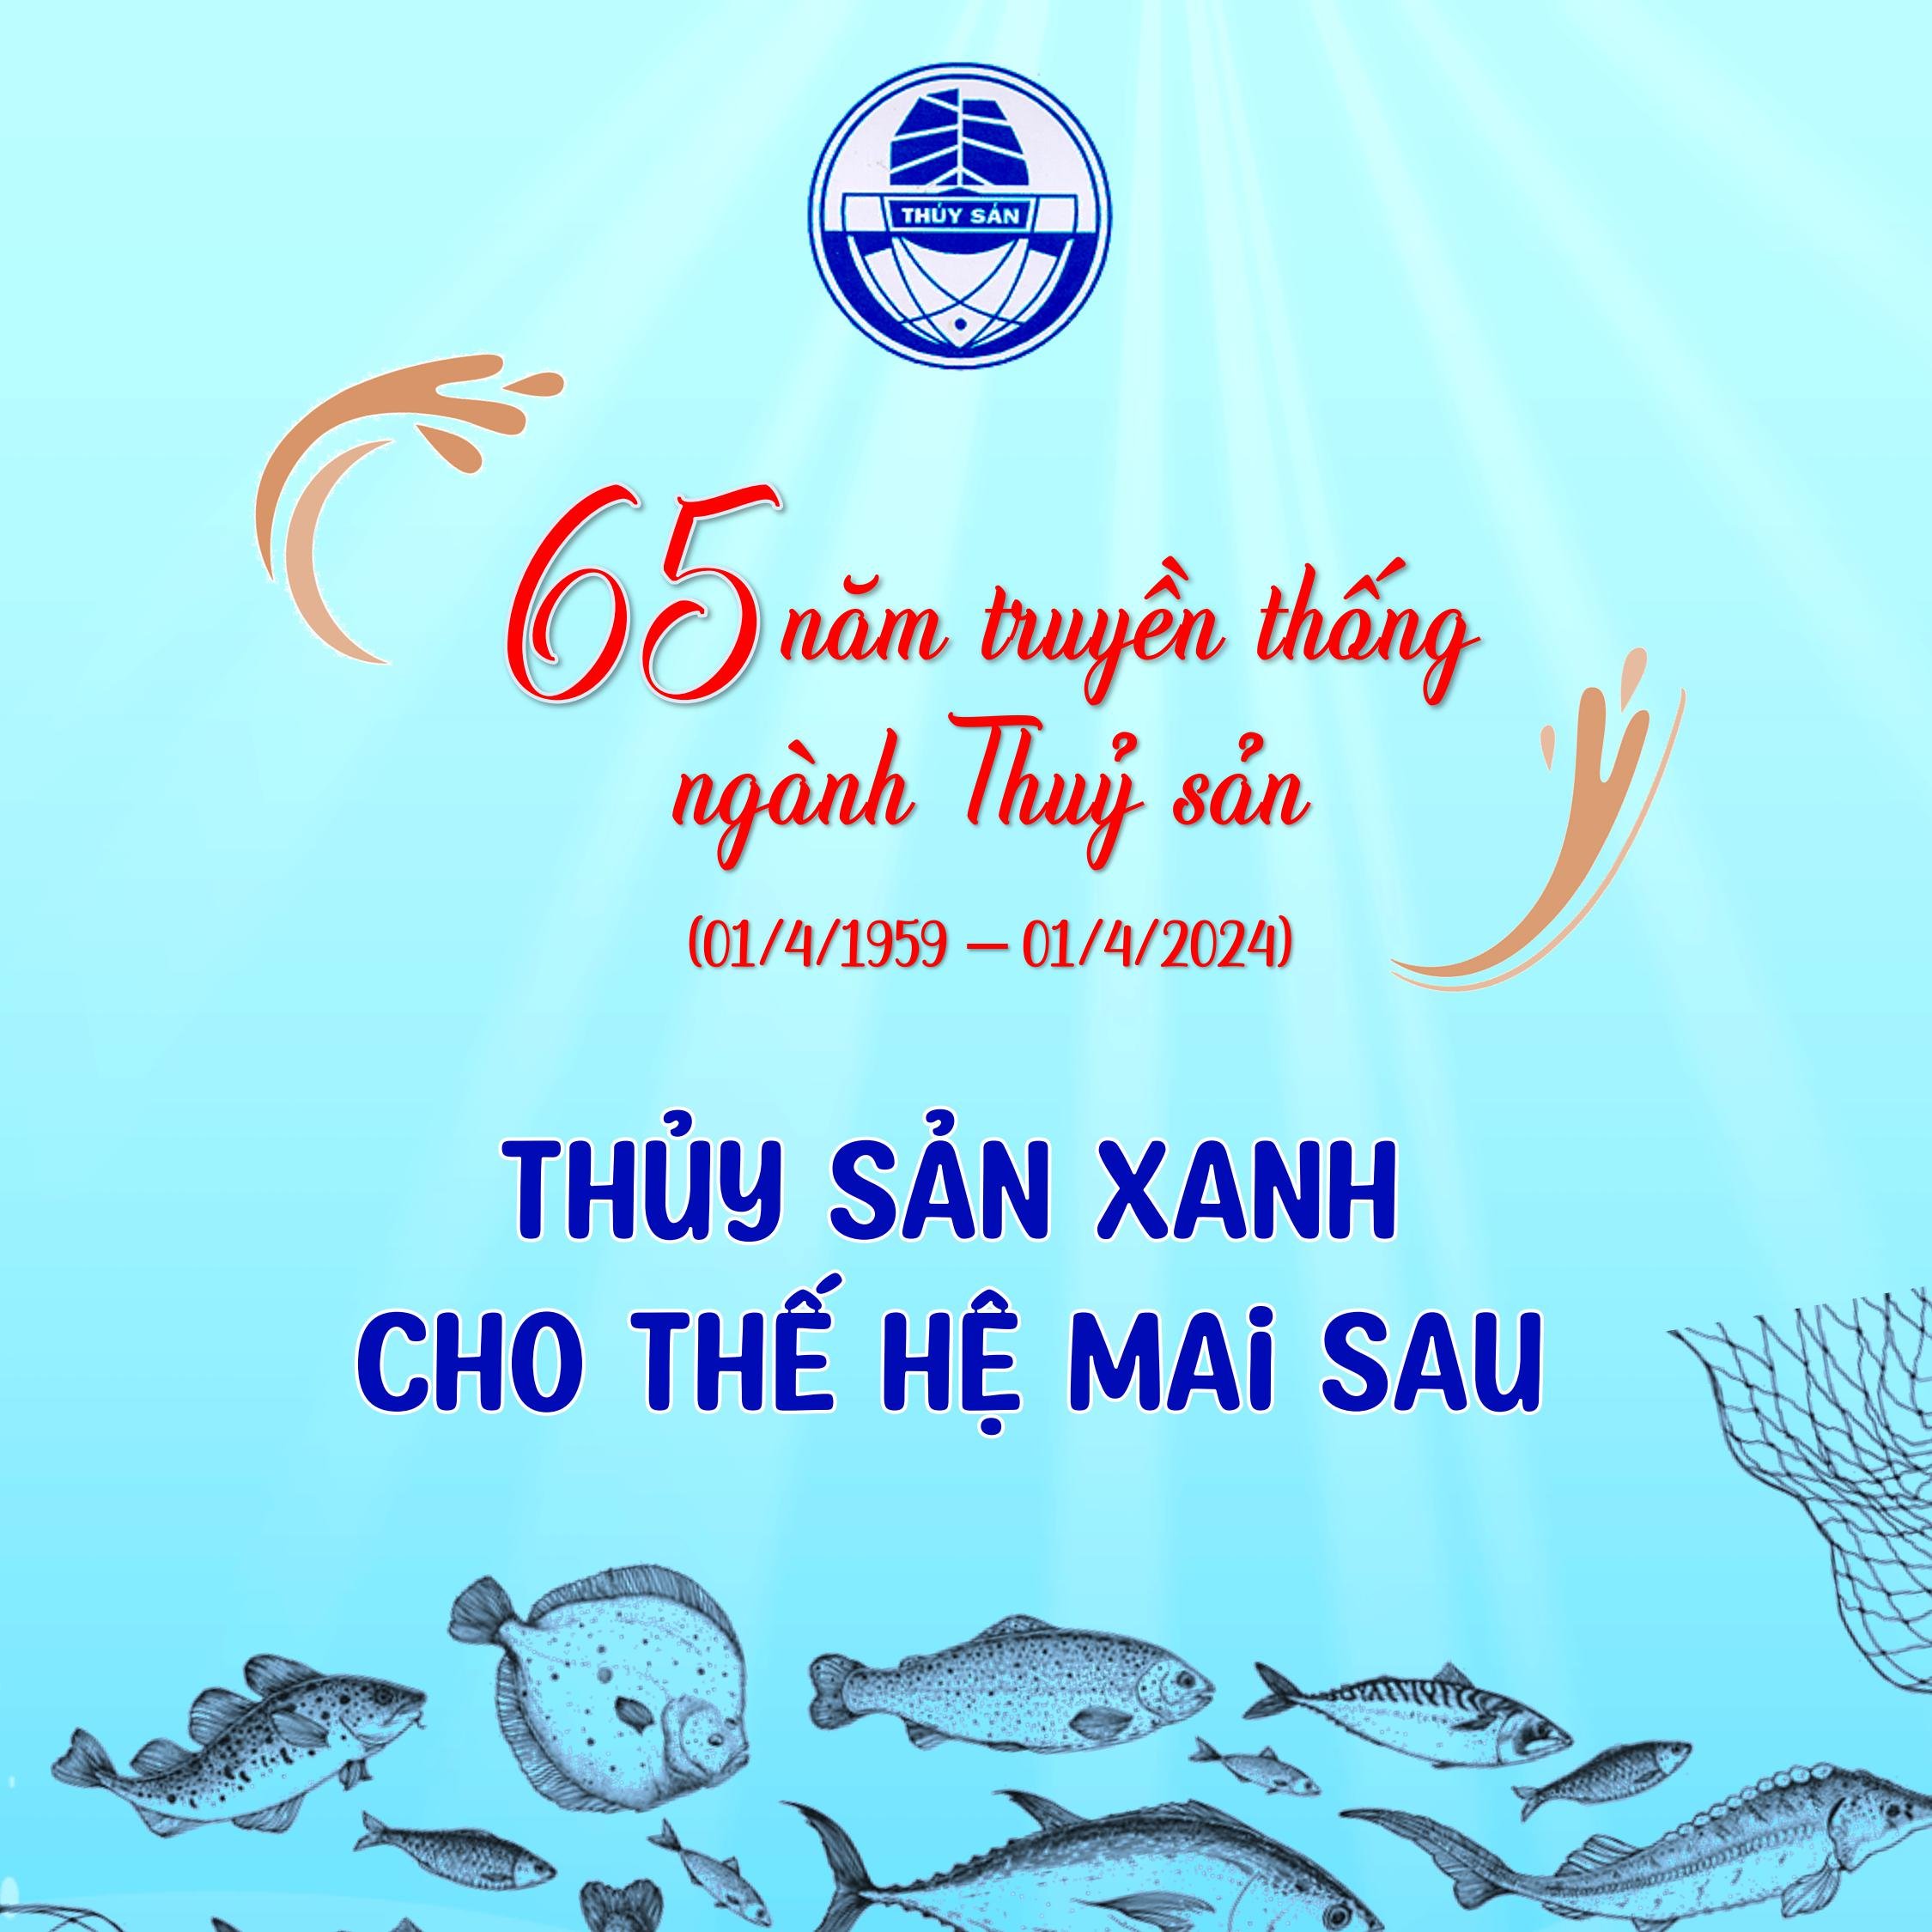 Kỷ niệm 65 năm truyền thống ngành Thủy sản Việt Nam (01/4/1959 - 01/4/2024)